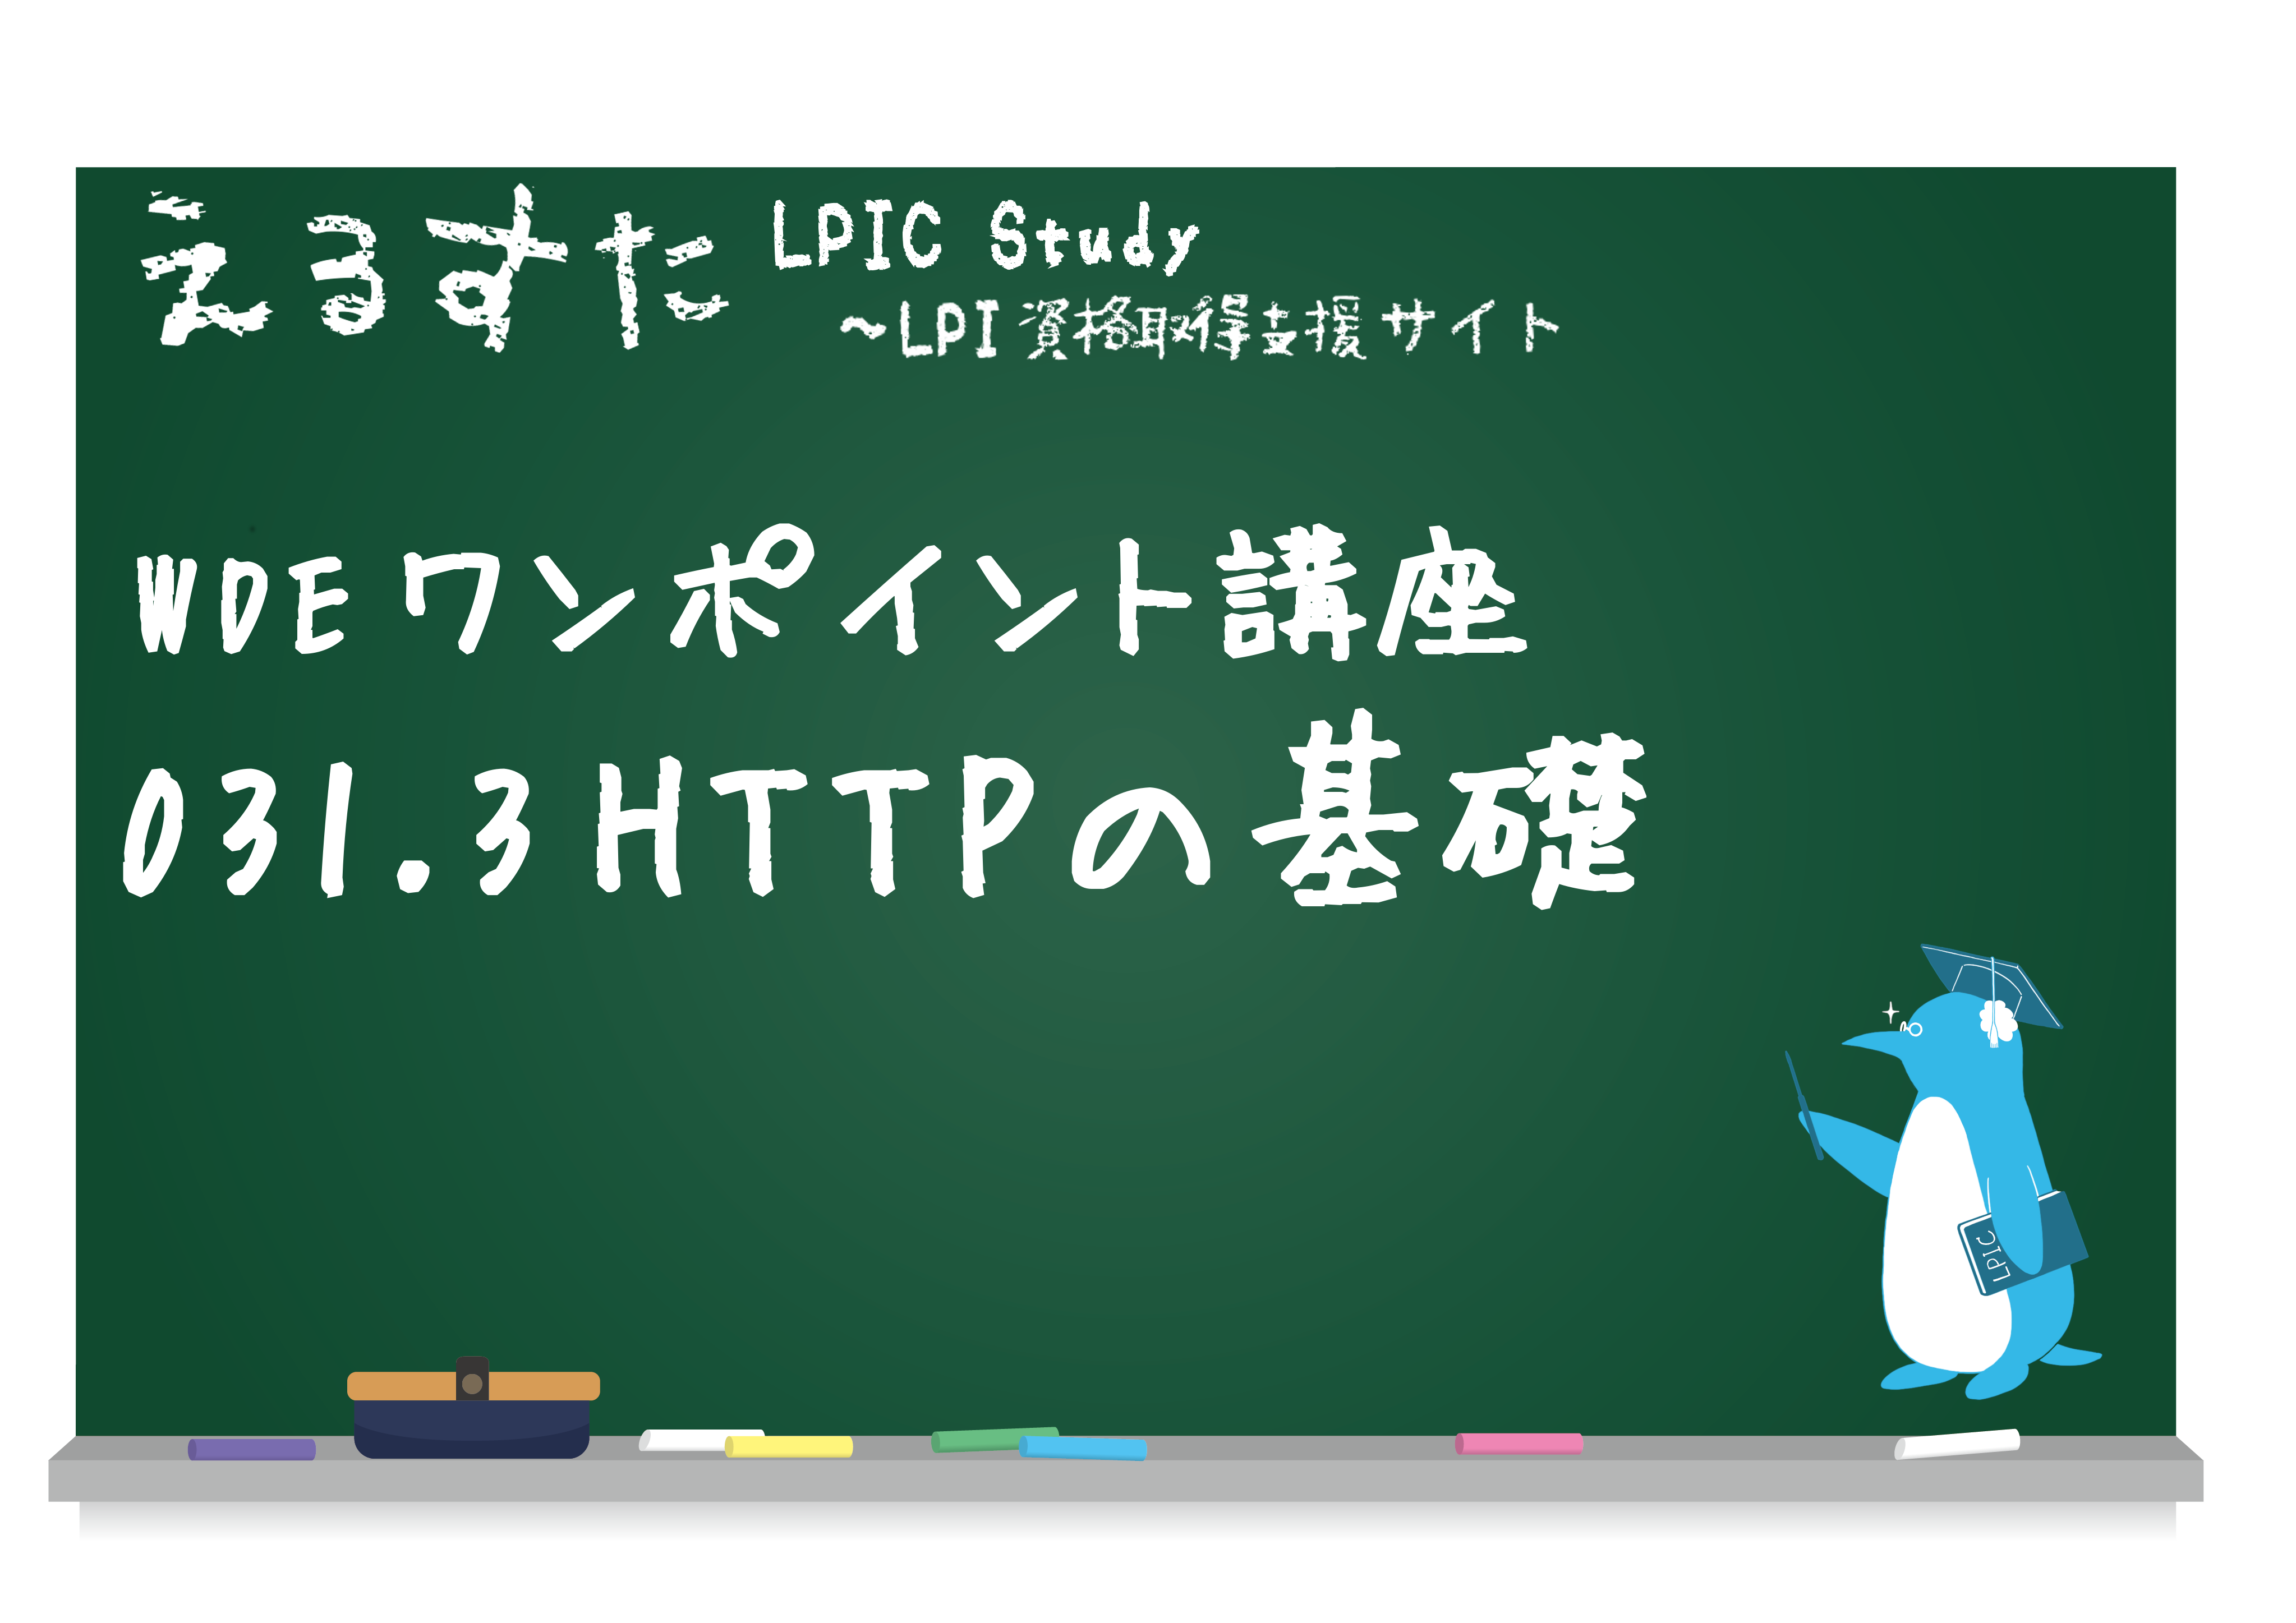 031.3 HTTPの基礎